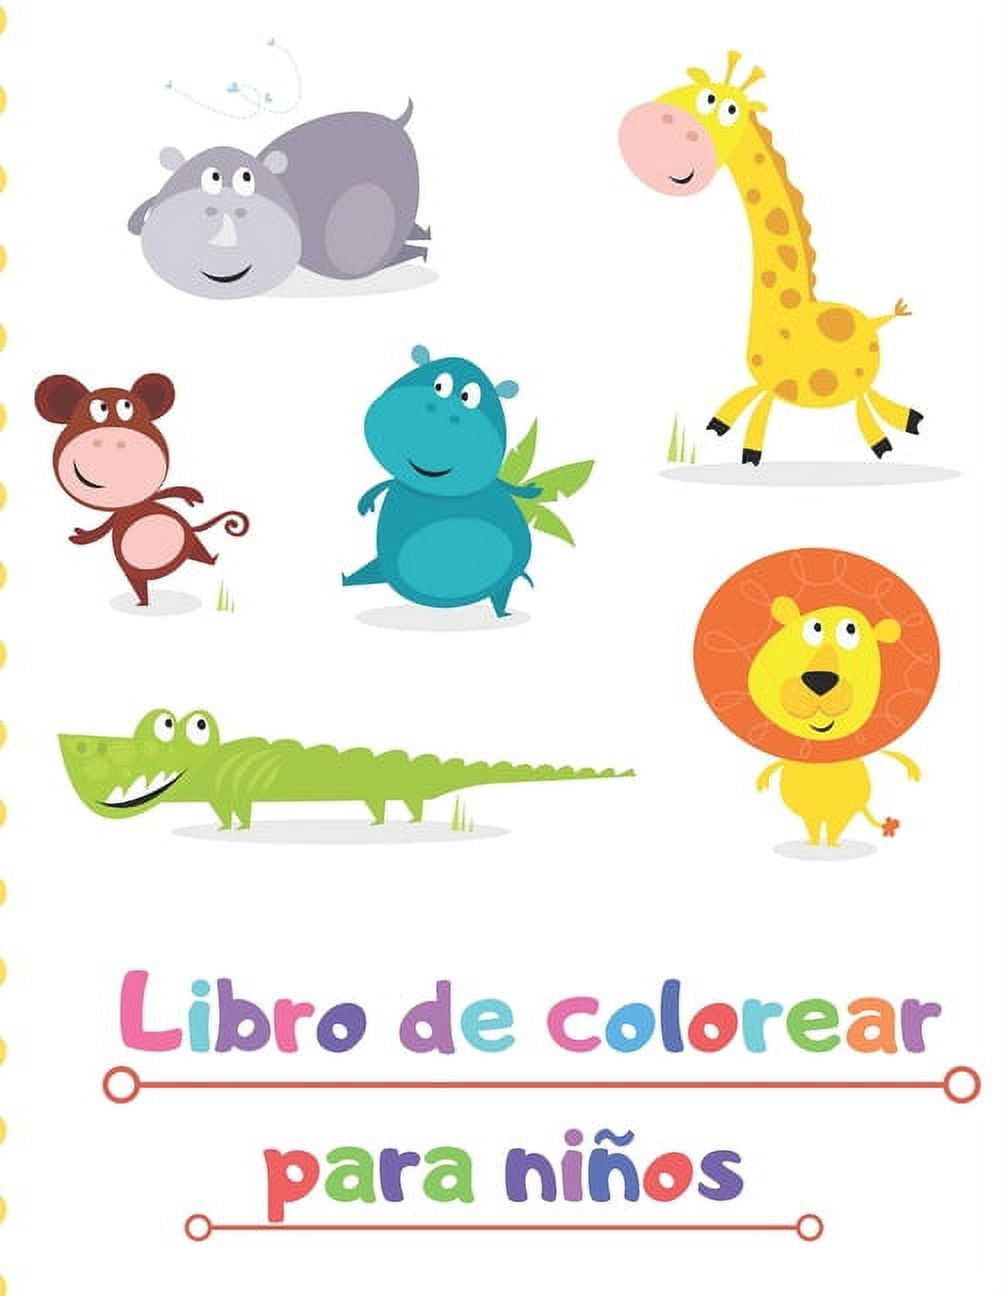 Libro de colorear para niños.